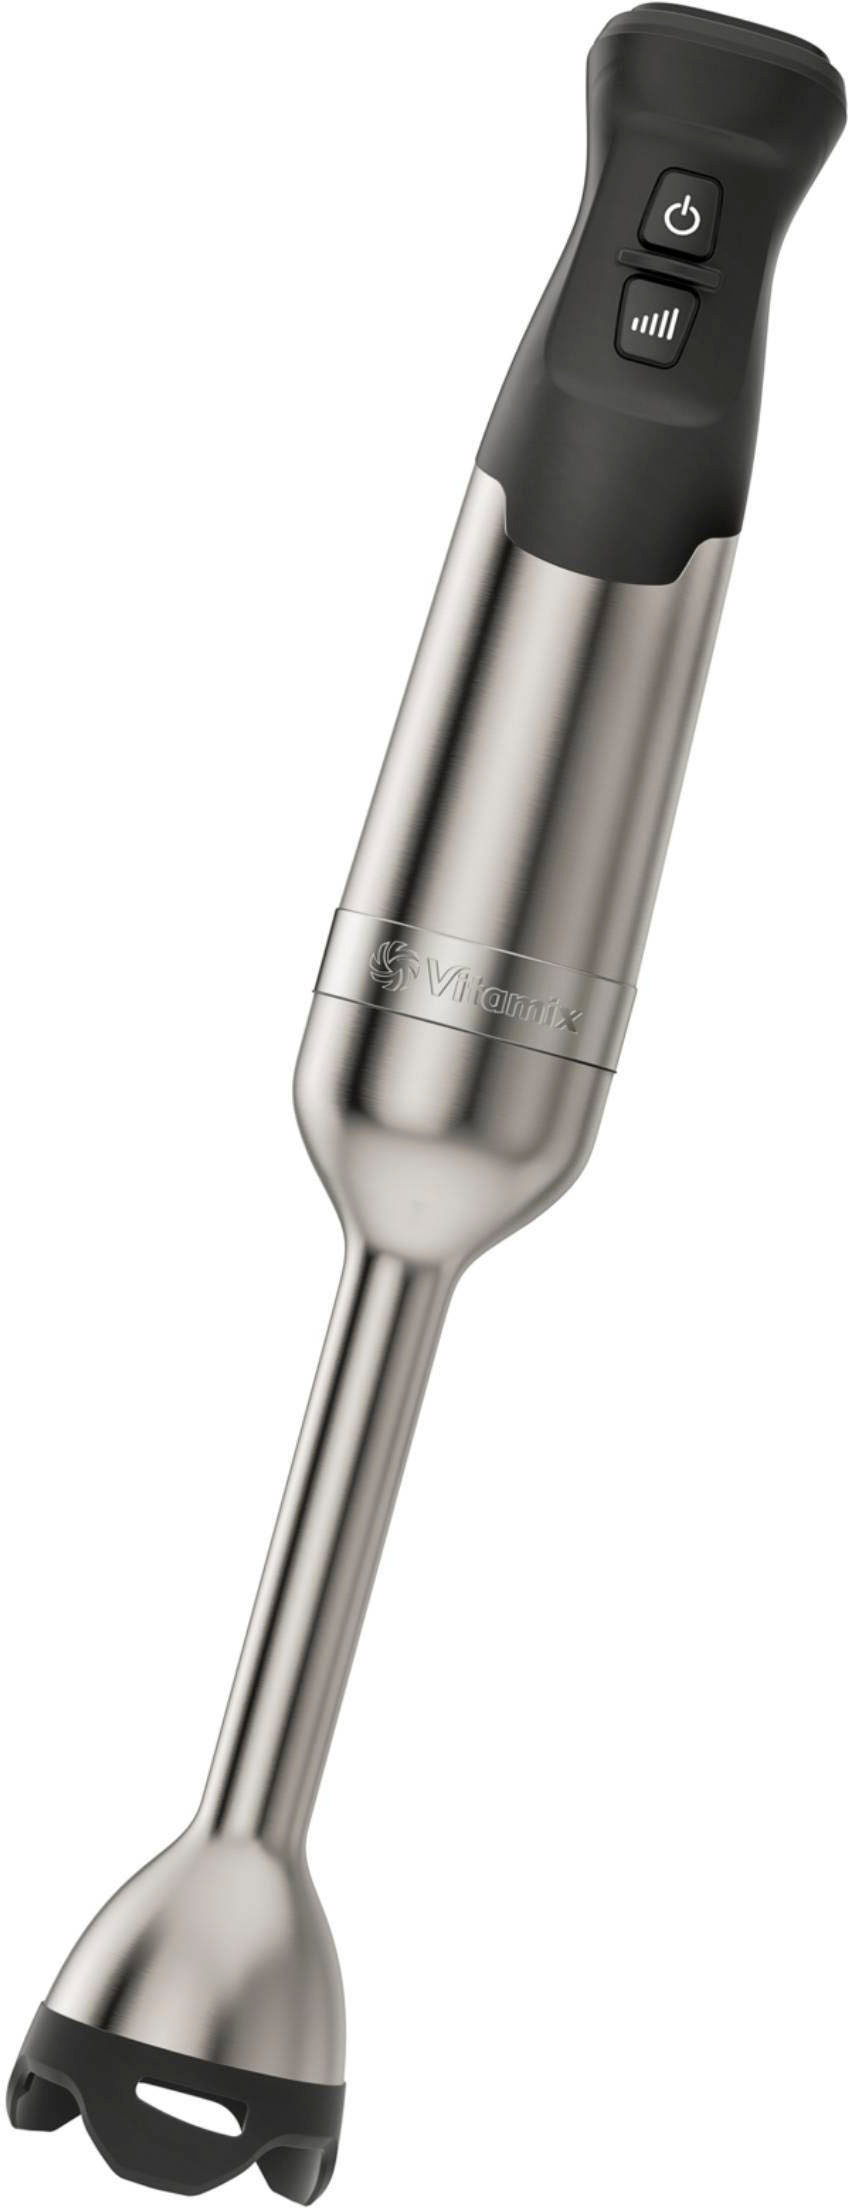 Vitamix Immersion Blender Stainless Steel 067991 - Best Buy